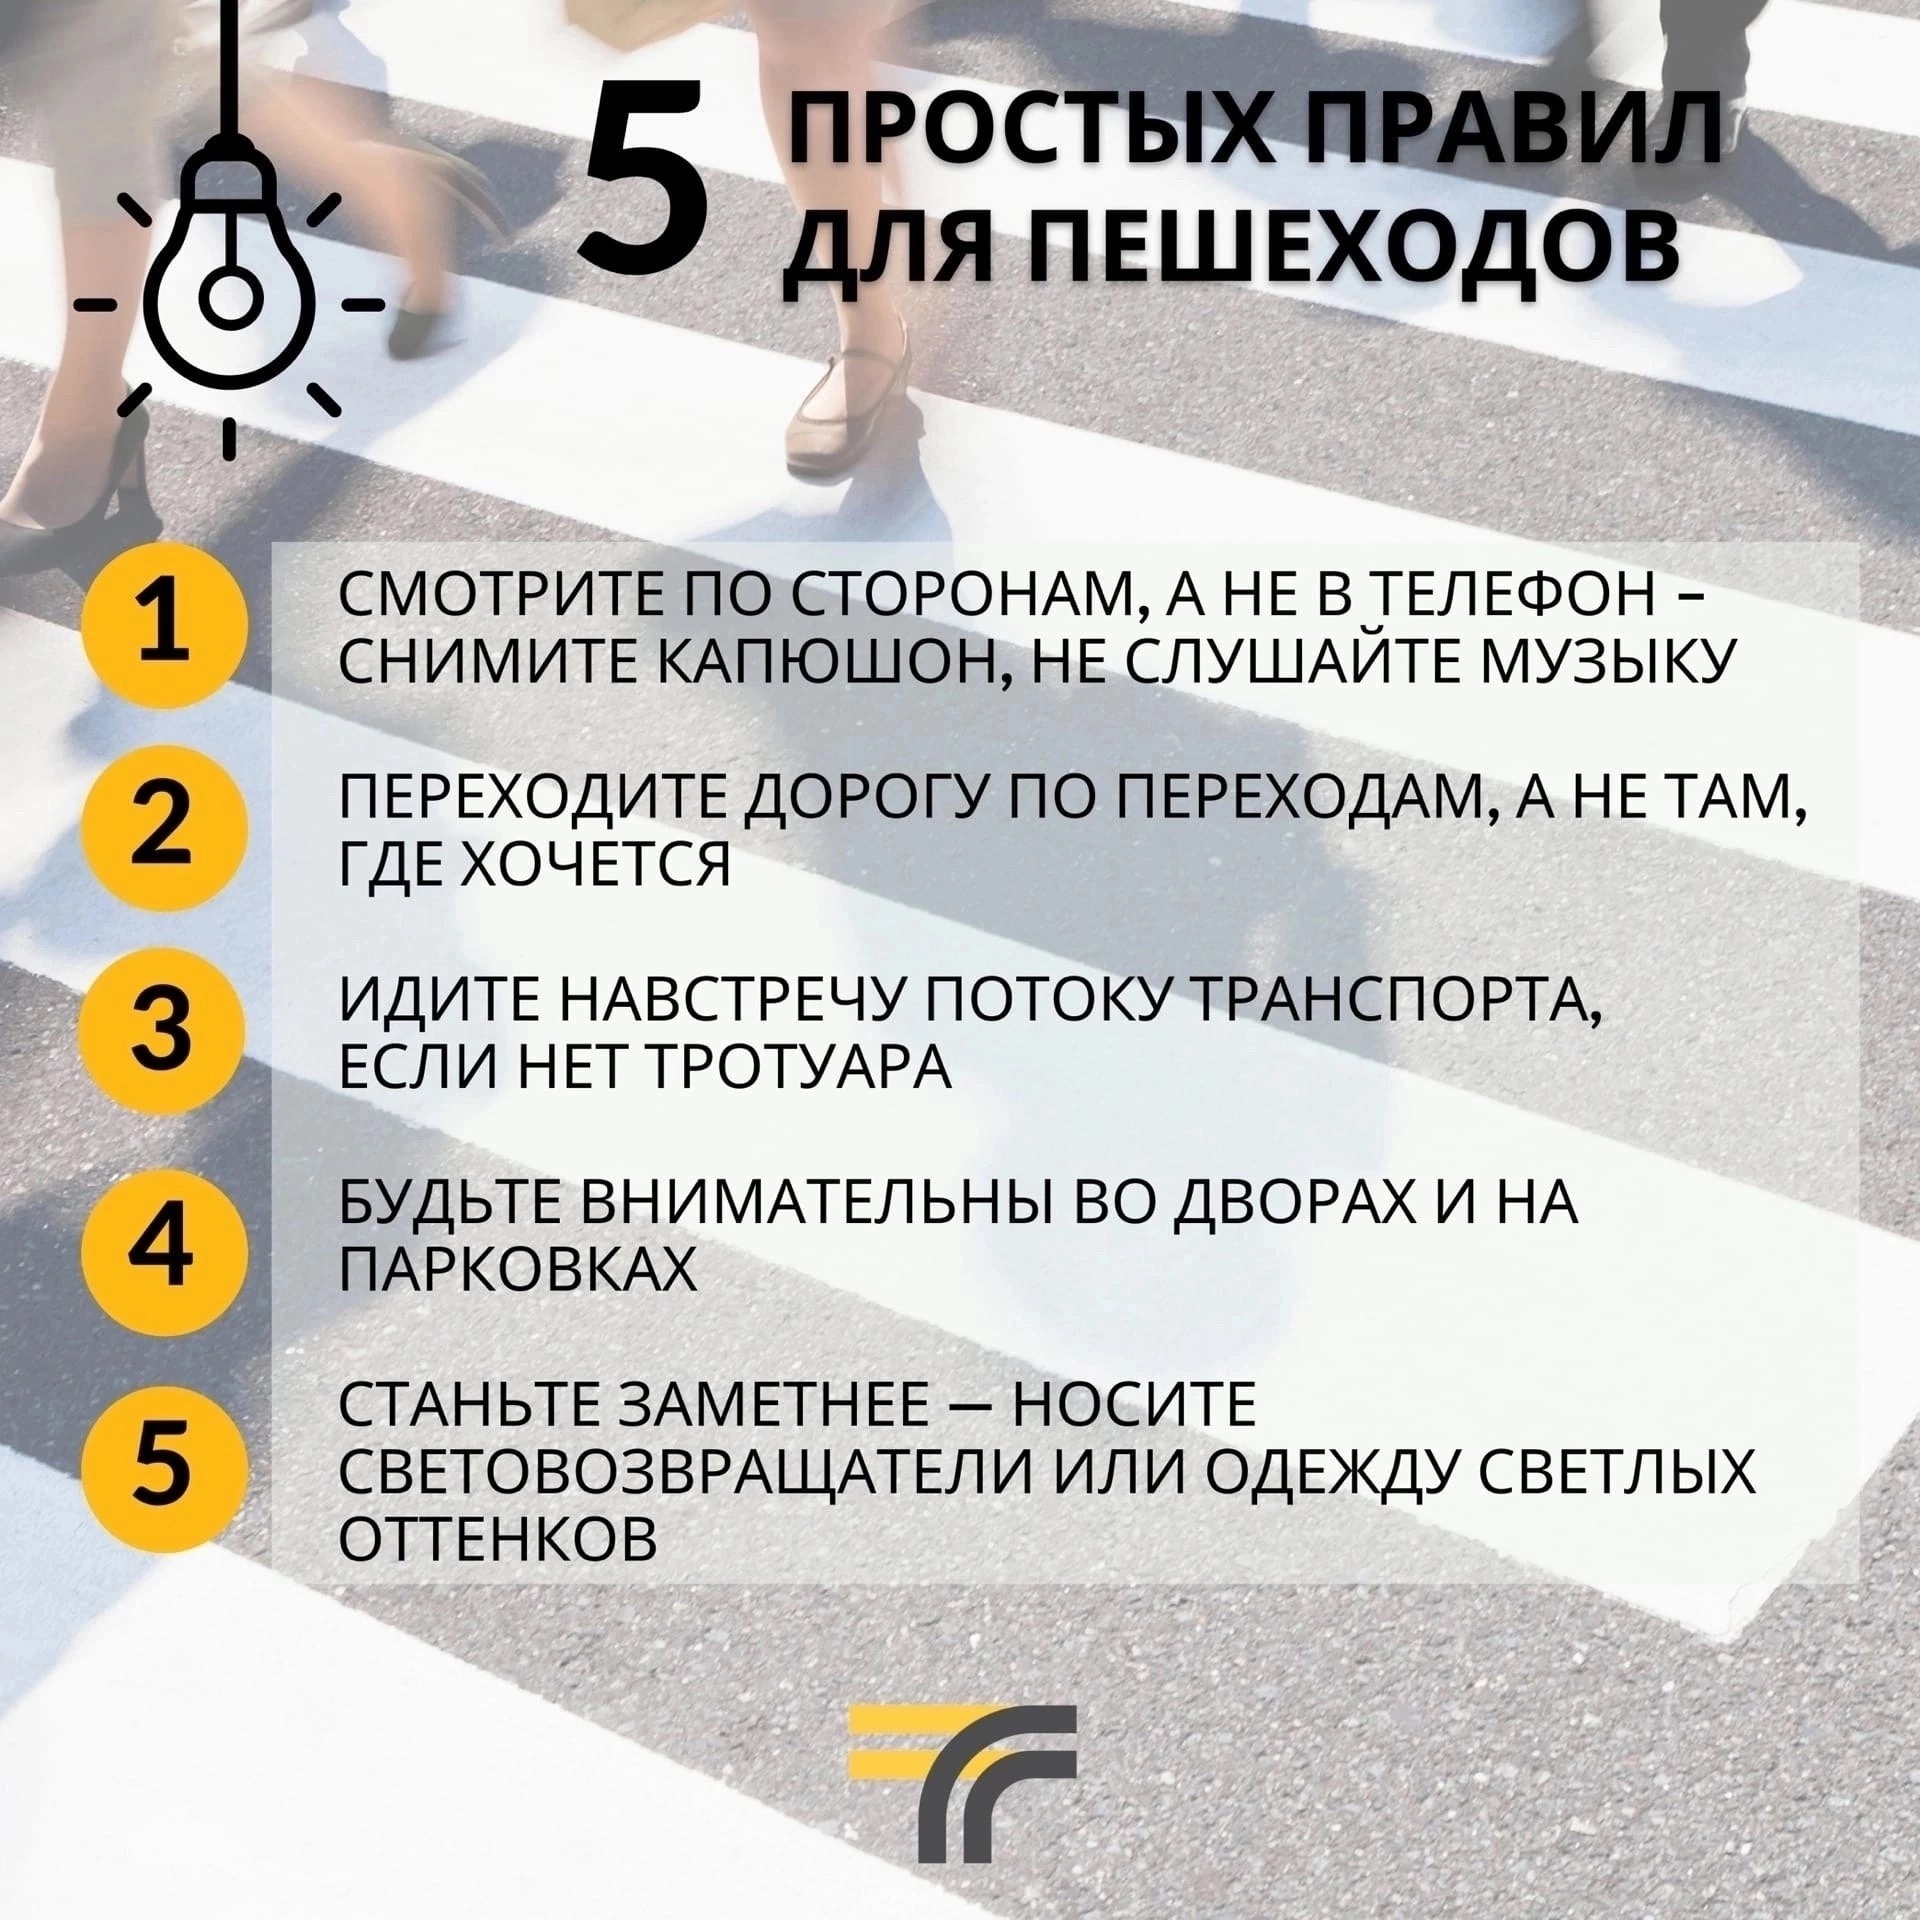 5 простых правил для пешеходов.